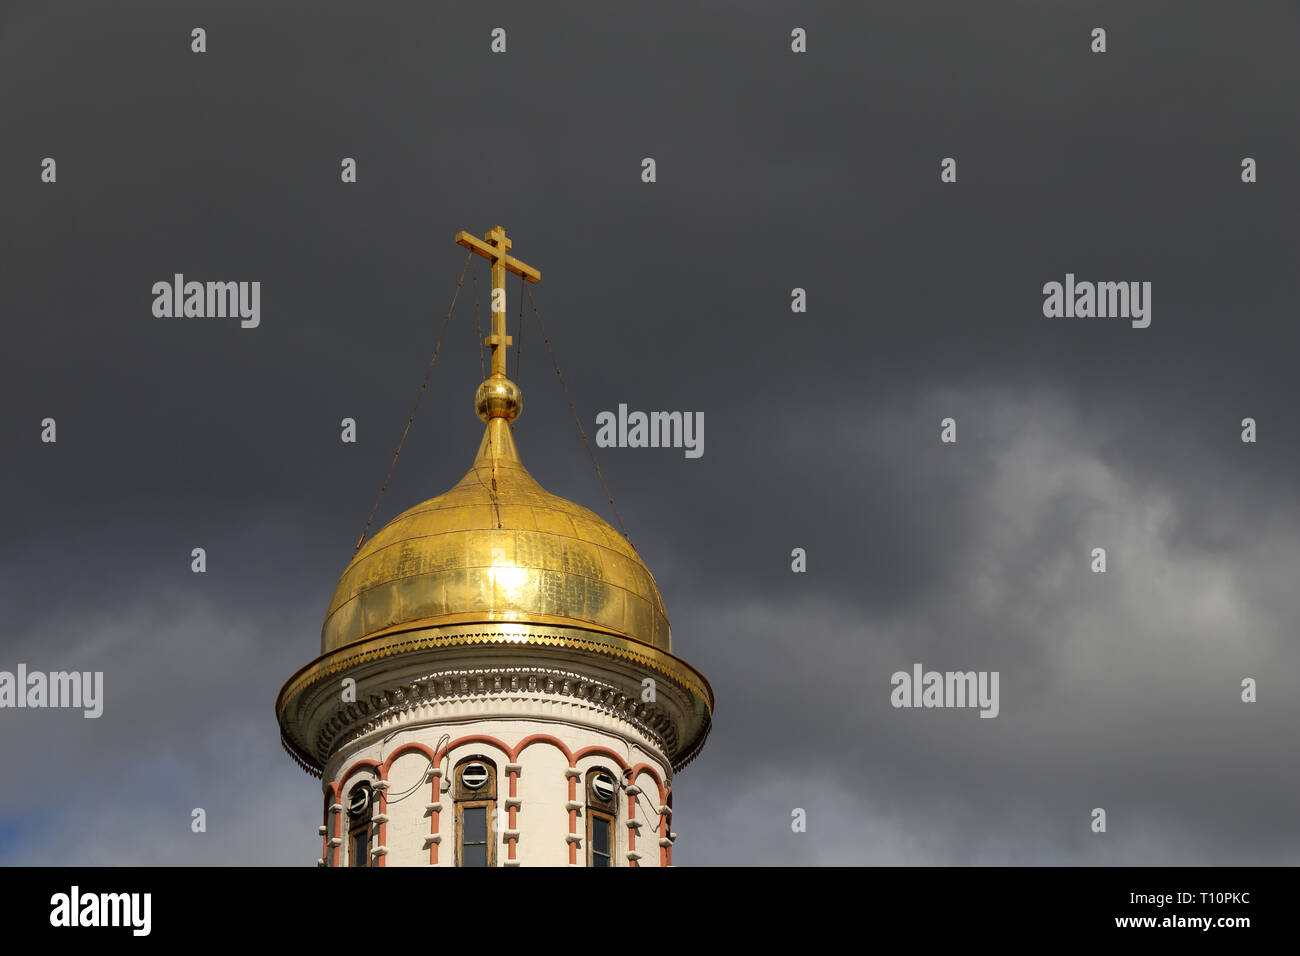 Goldenen Kuppel des christlichen Tempel mit einem Kreuz gegen den Sturm dramatische Himmel mit dunklen Wolken. Orthodoxe Kirche, Hintergrund für religiöse Karte Stockfoto